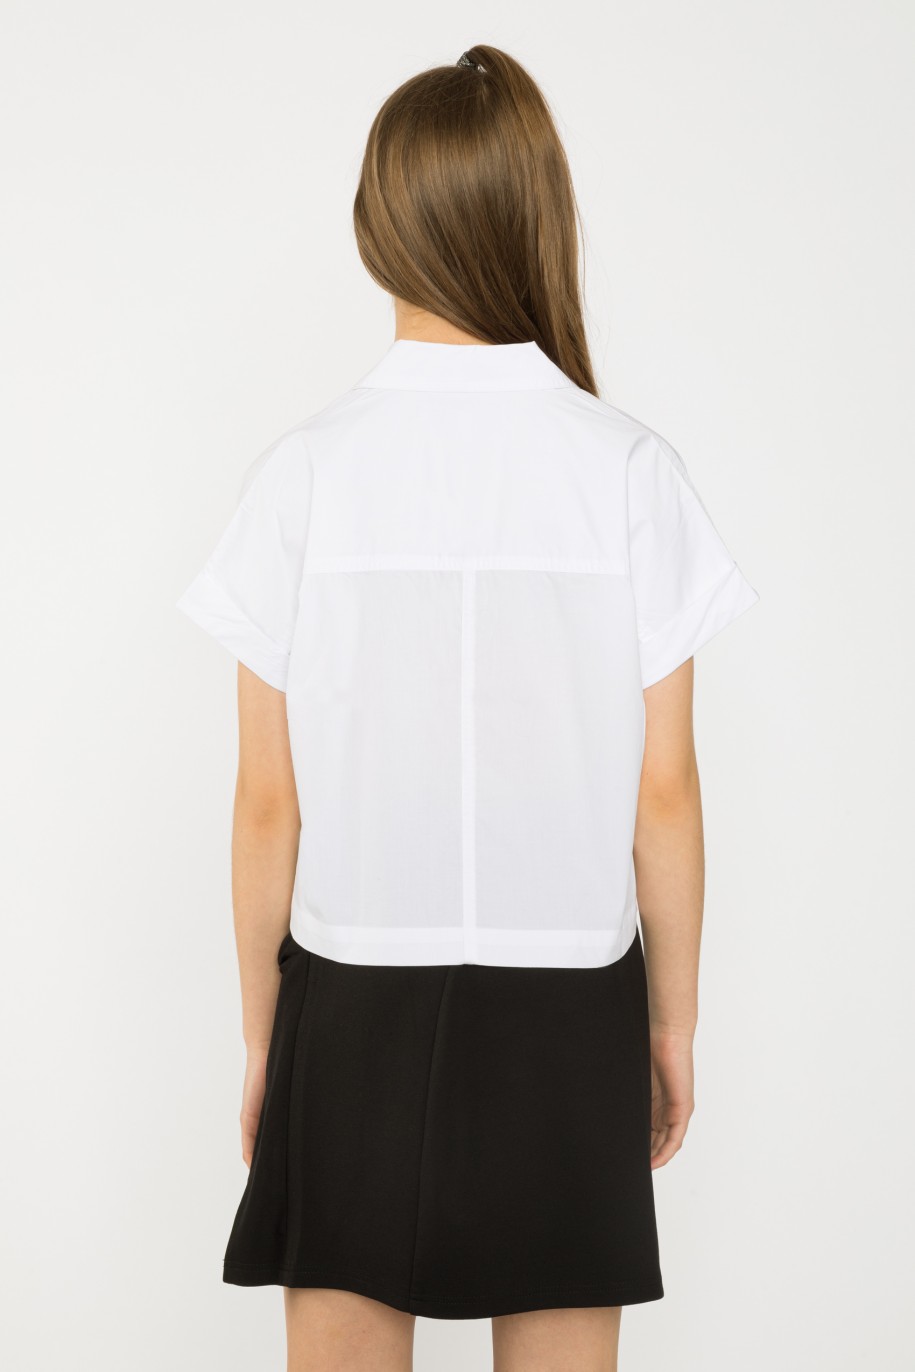 Biała krótka koszula dla dziewczyny - 34082